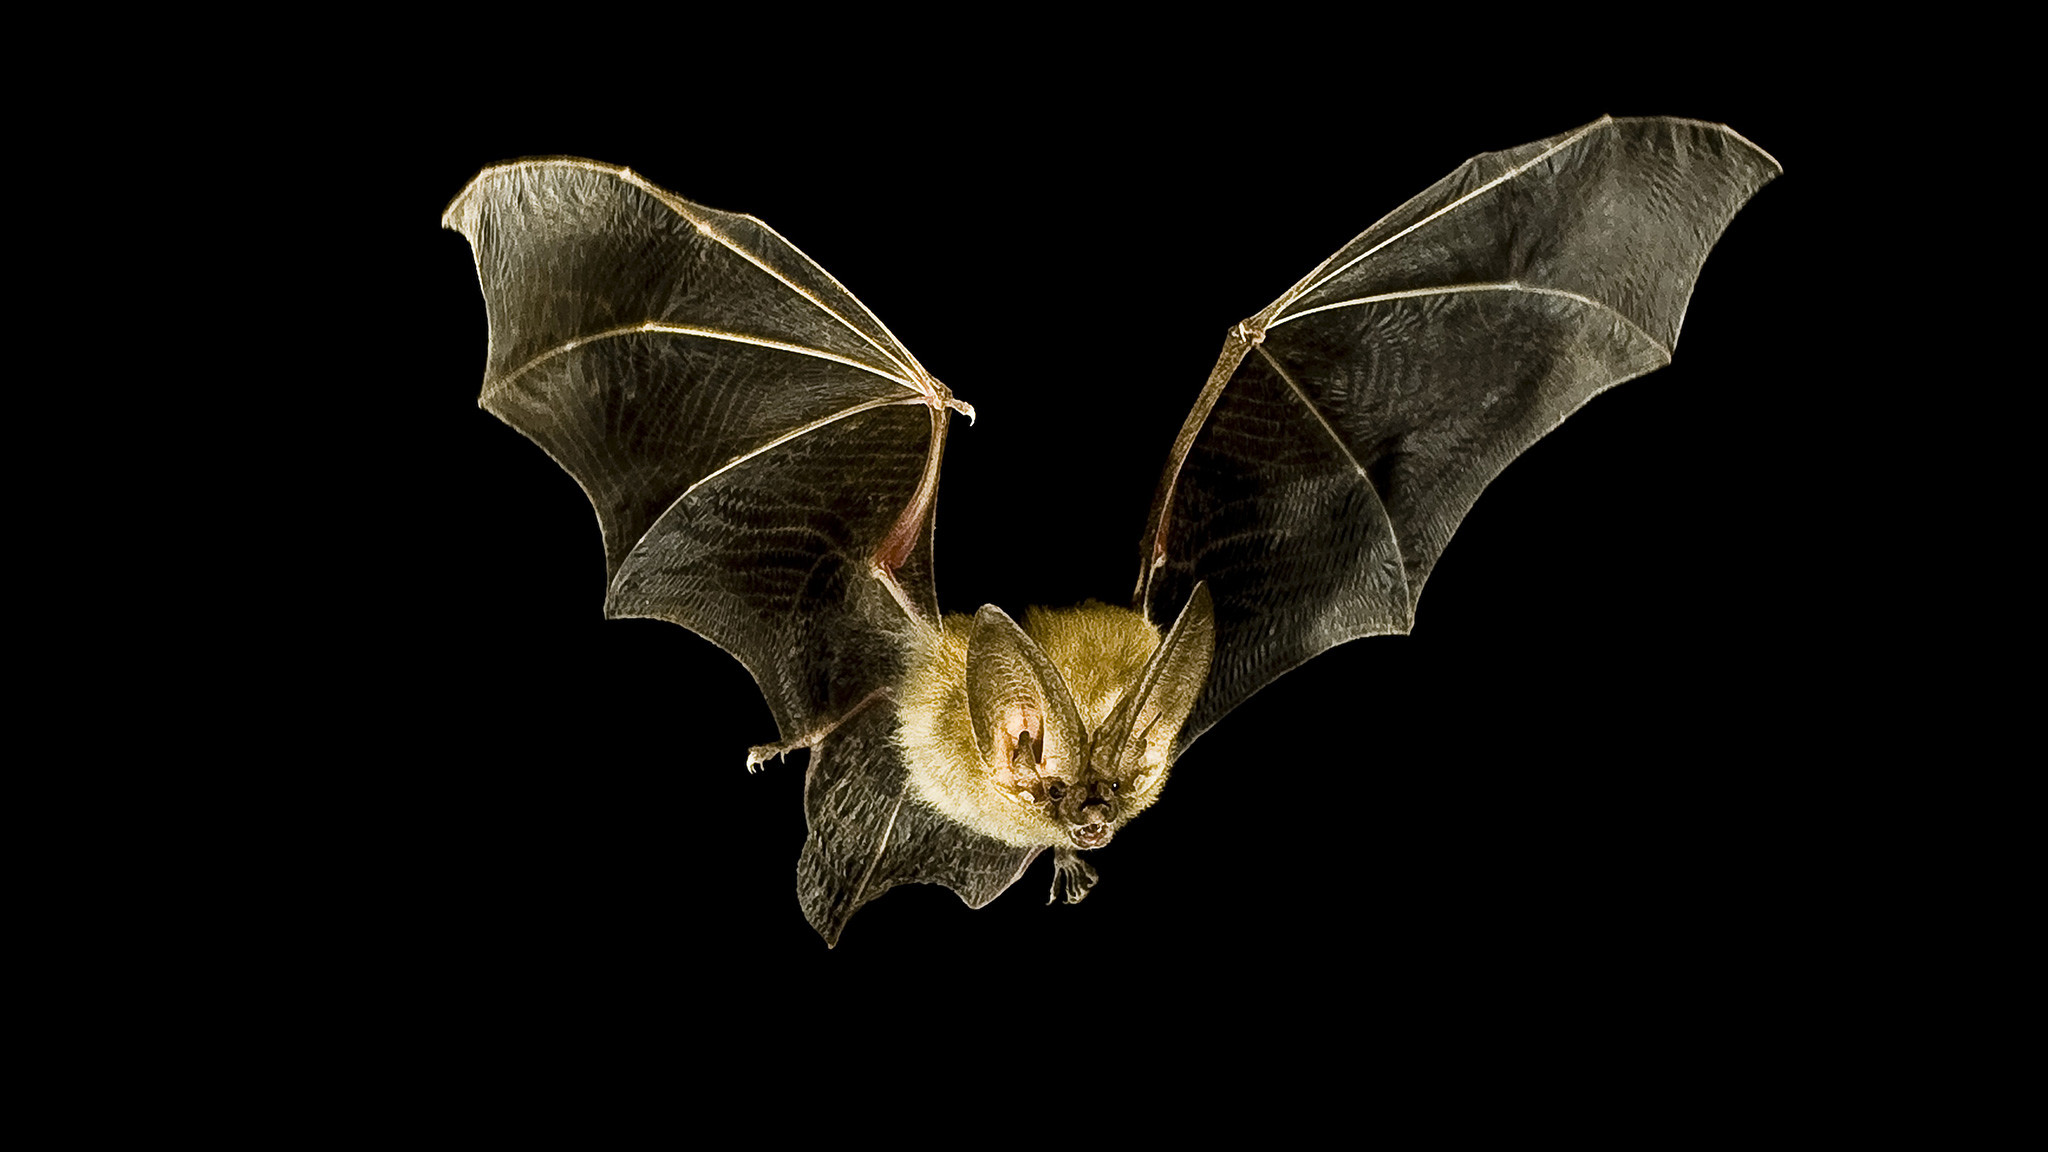 Bats Wallpaper (62+ images)